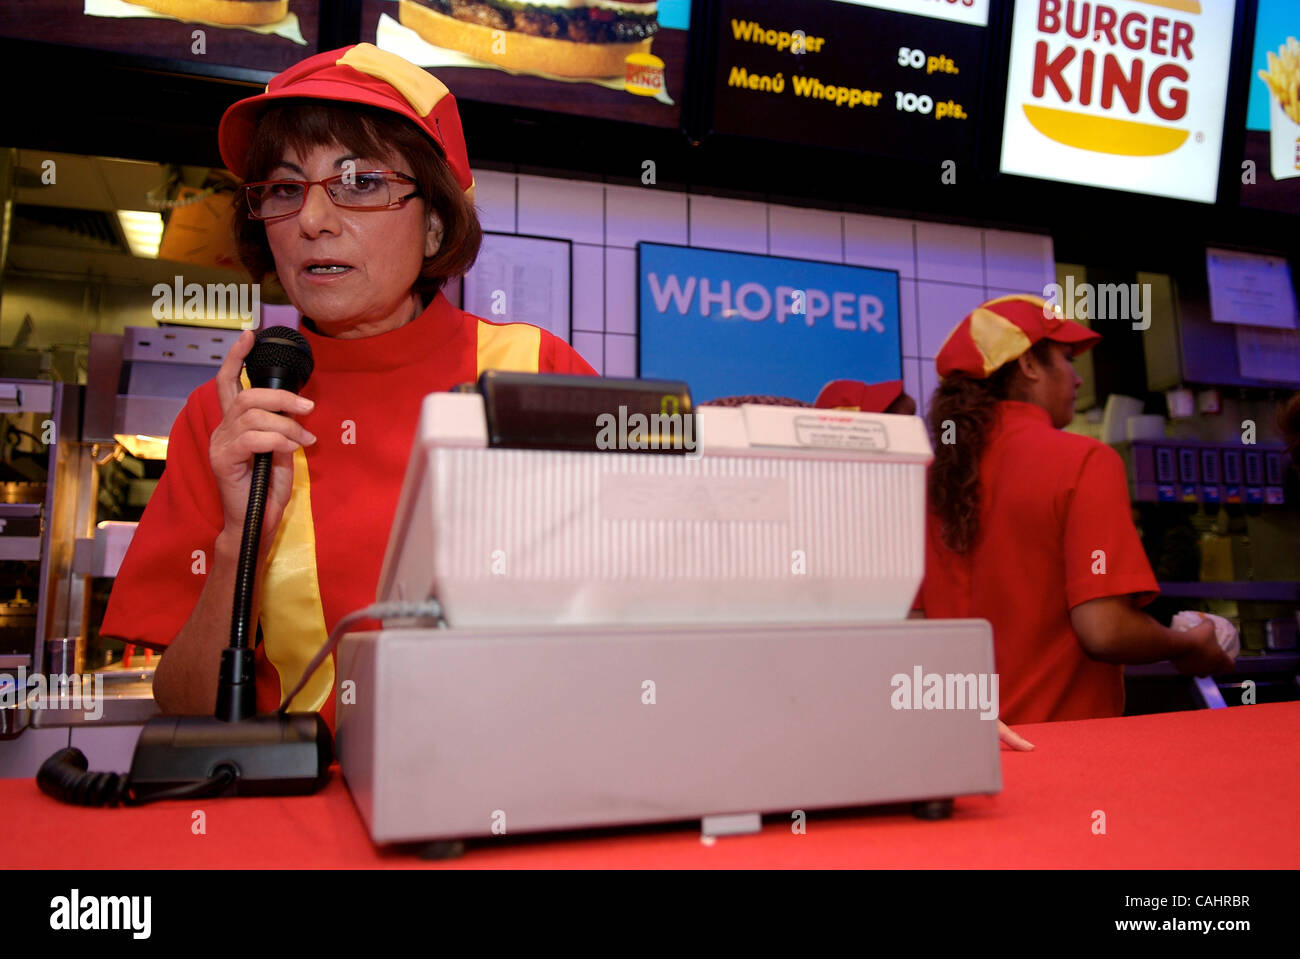 Madrid. Burger King, Plaza de los cubos. Burger King celebra 50 aOÃÄos de Whopper, su hamburguesa estrella. Para ello en el Burger King de la Plaza de los cubos en Madrid, primer establecimiento en EspaOÃÄa Burger King, y el primer destino europeo de Whopper, se ha recreado el ambiente de los aOÃÄos Foto de stock